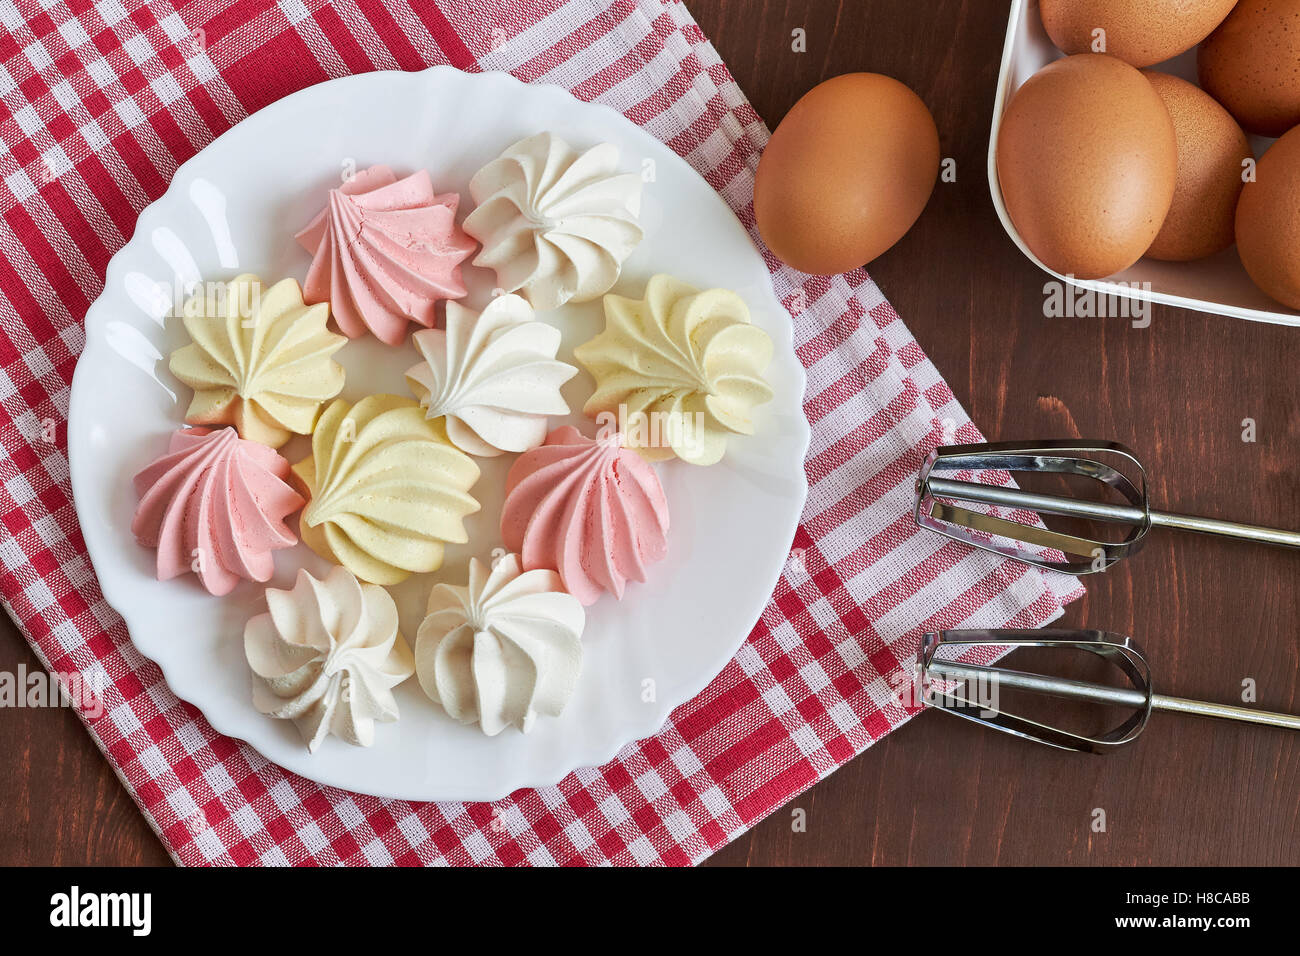 Freschi colori deliziosi biscotti meringa servita su piastra bianca con uova e miscelatore. Vista superiore Foto Stock